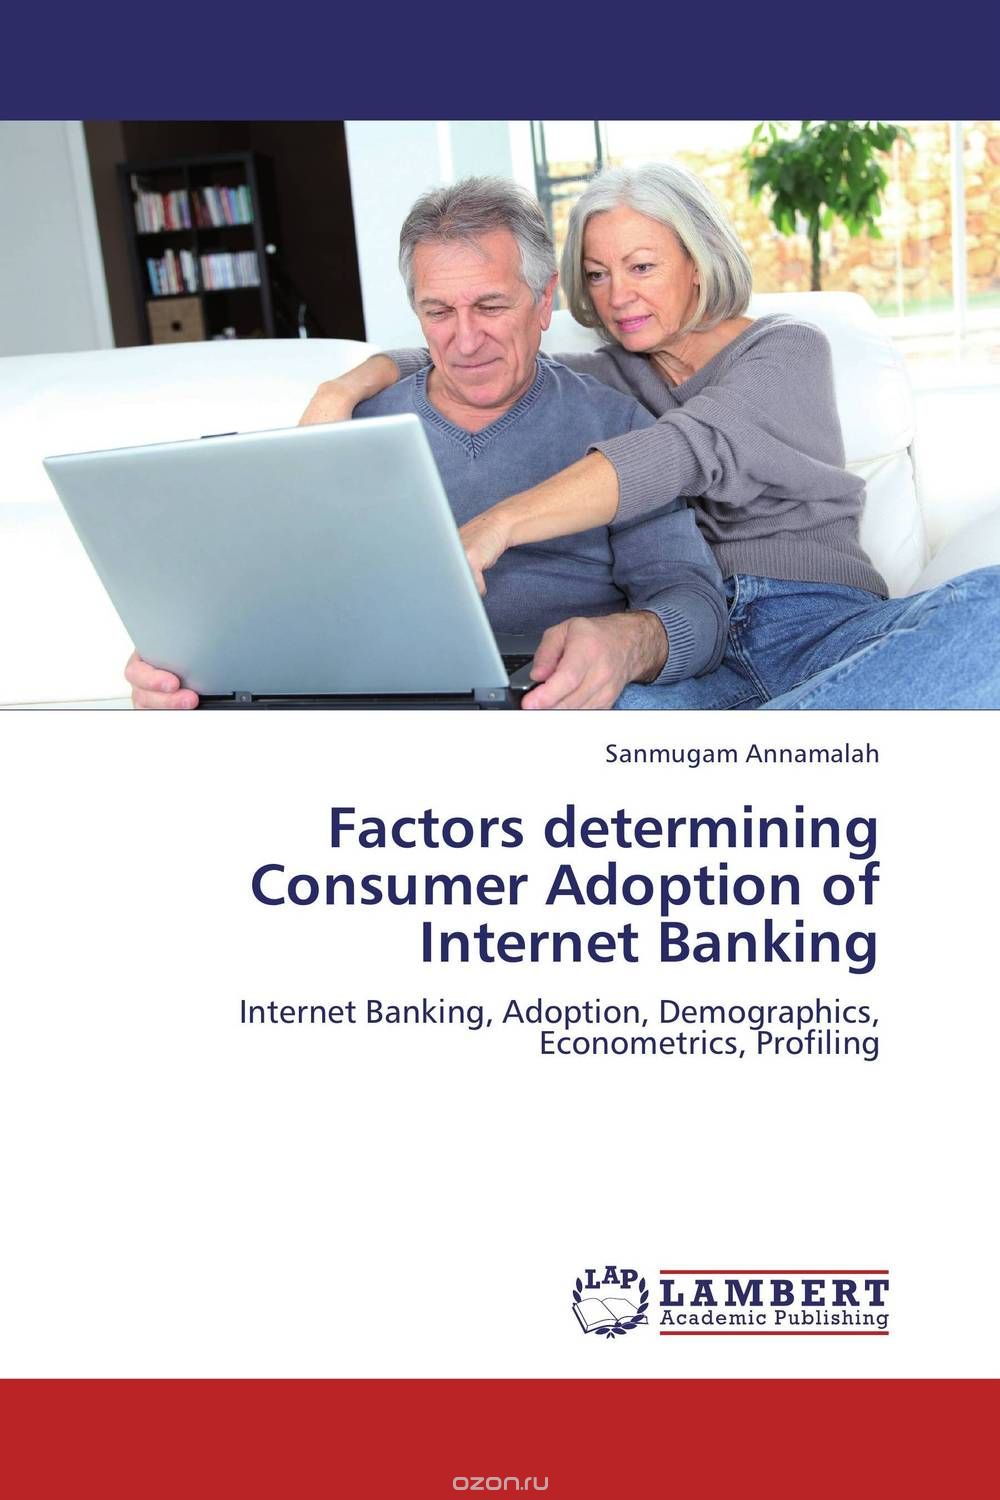 Скачать книгу "Factors determining Consumer Adoption of Internet Banking"